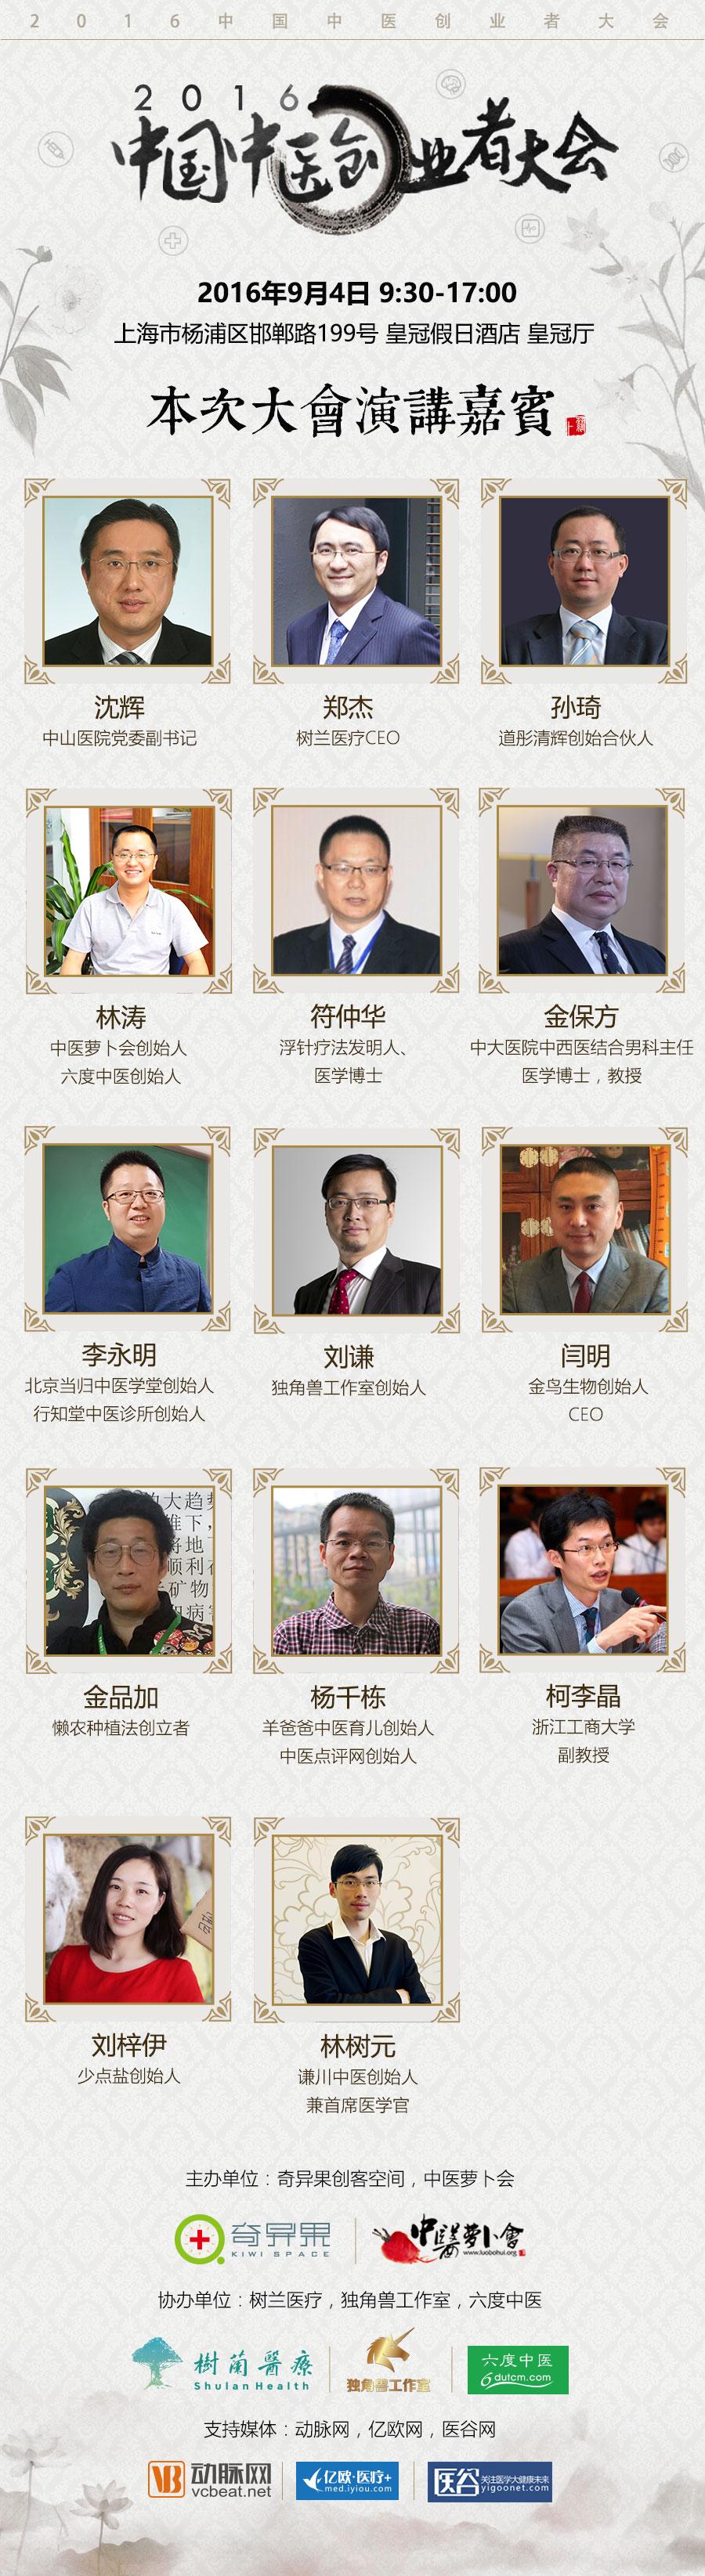 2016中国中医创业者大会